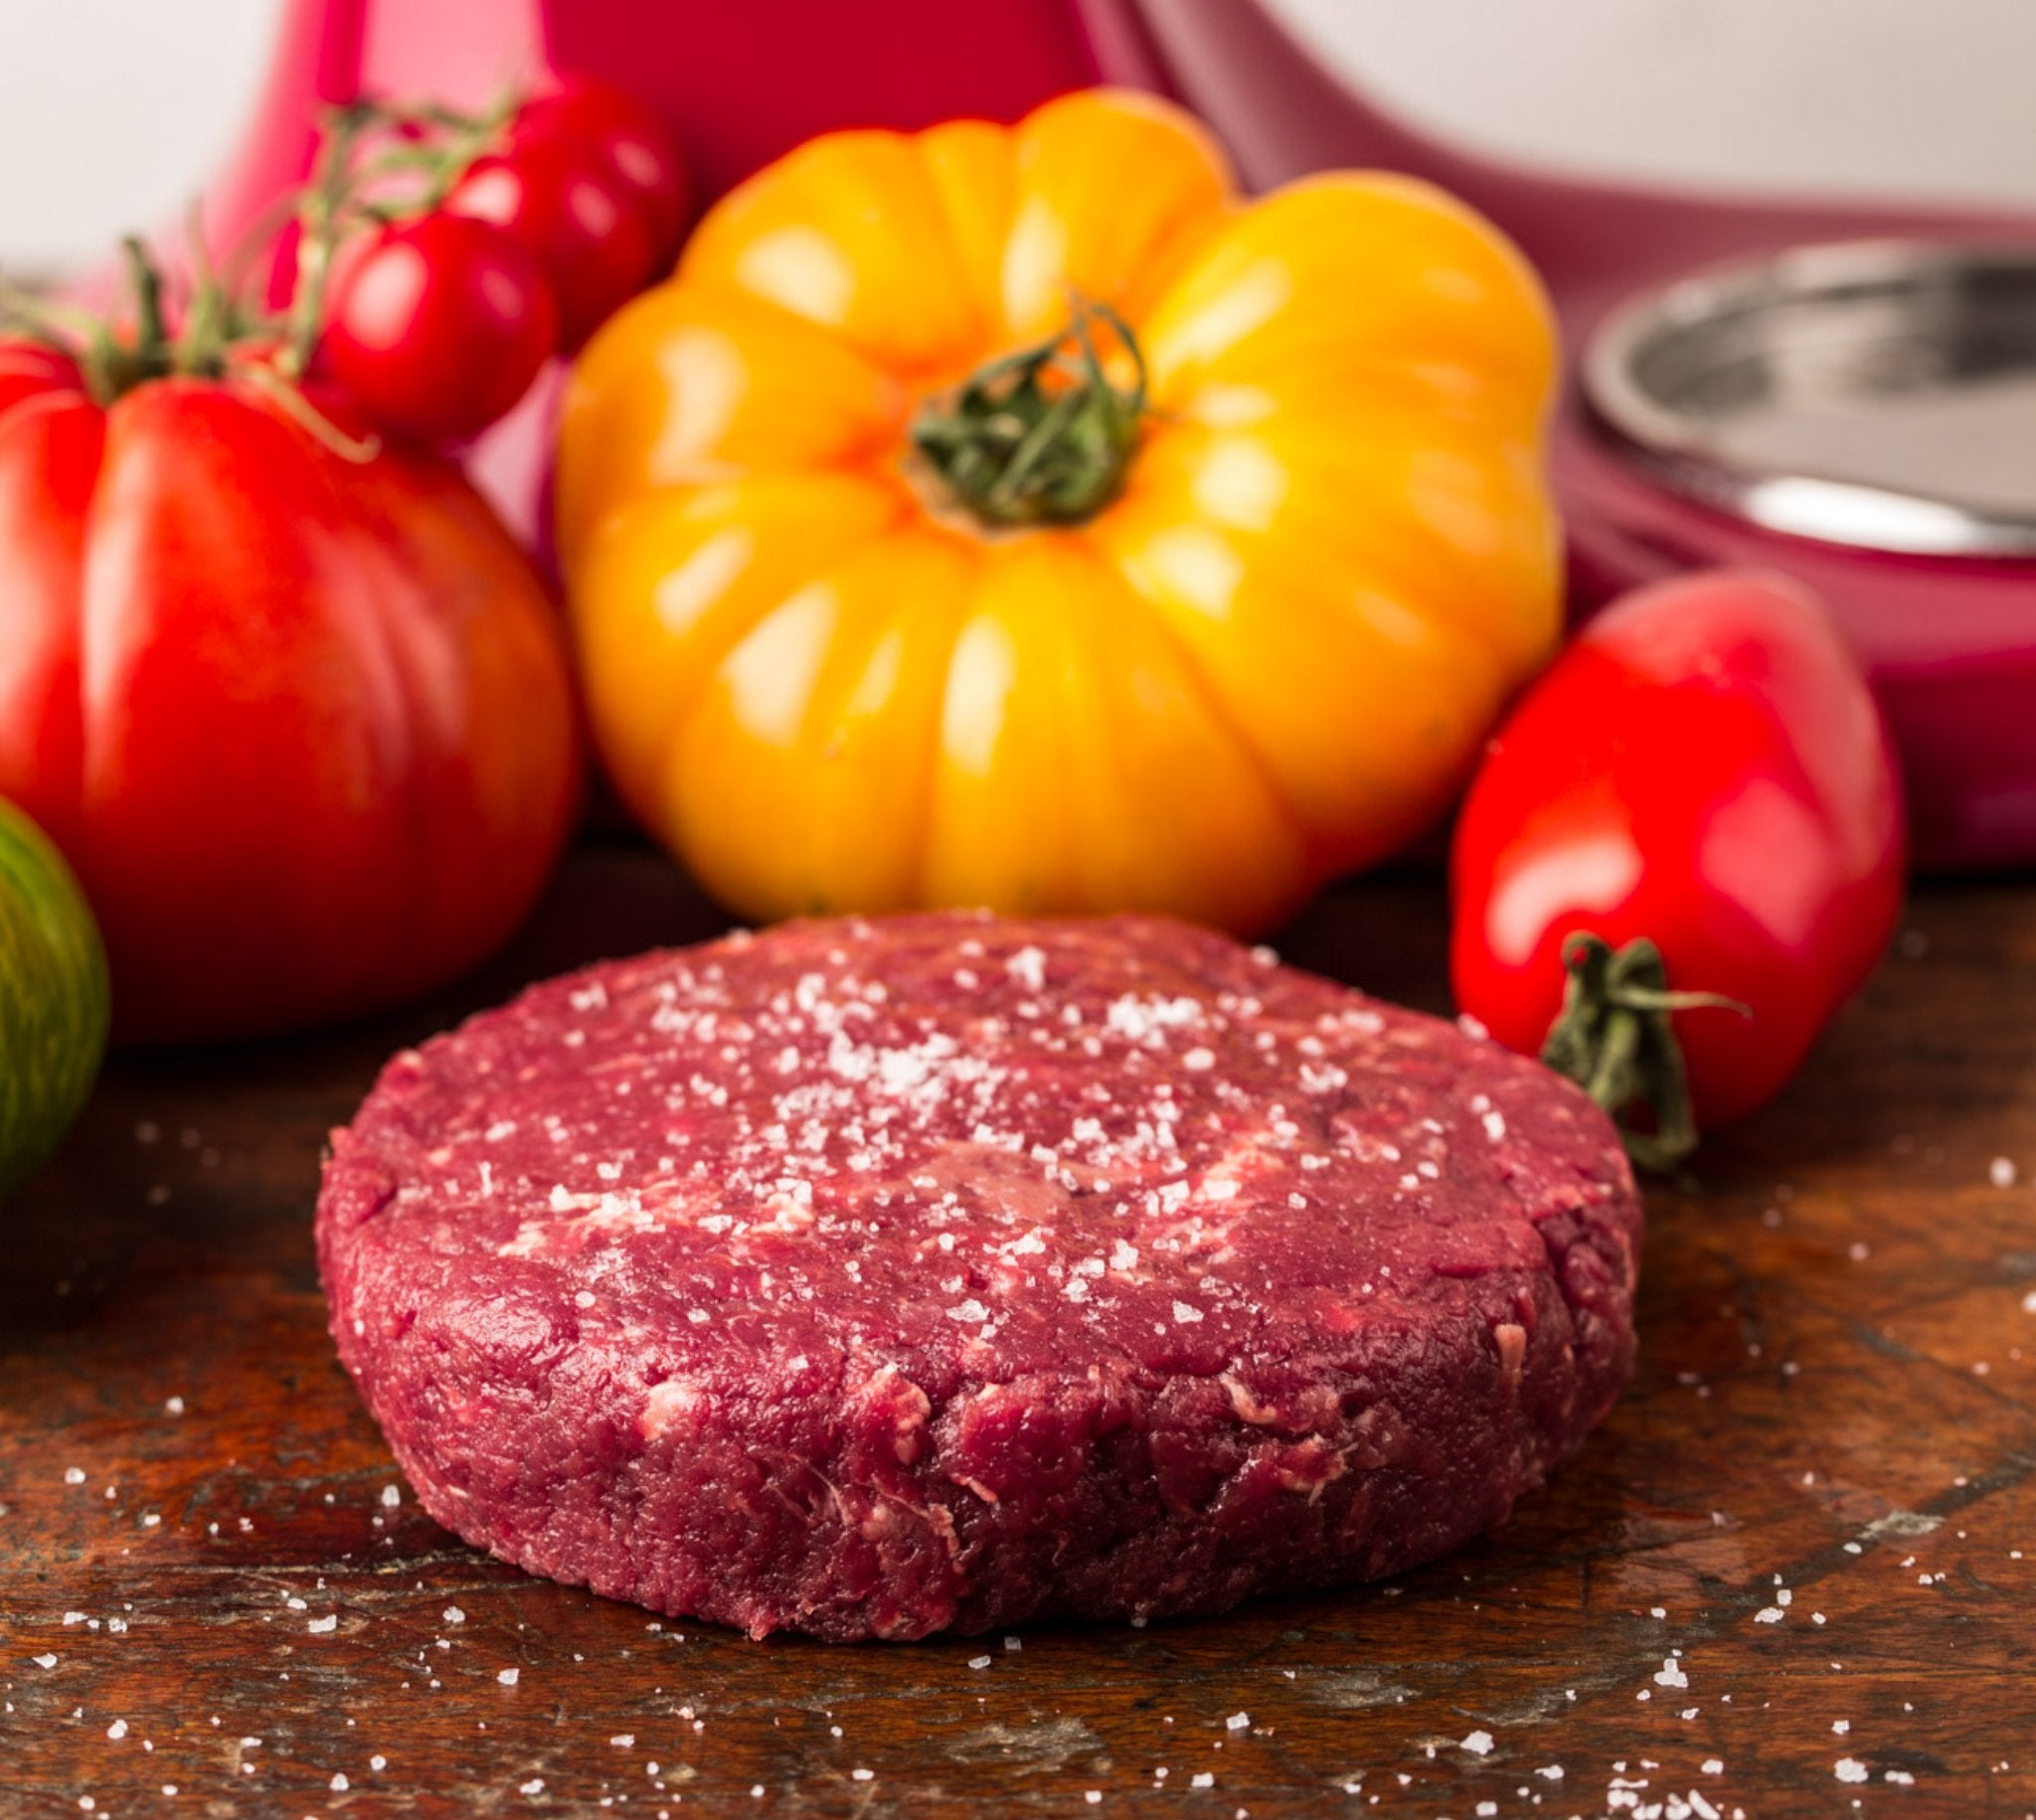 Premium Prime Rib Burger 180g - Edles Büffelfleisch - BüffelBill Shop Probieren Sie BüffelBill's Prime Rib Burger | 180g. Handselektiert aus edelsten Büffelfleisch Cuts wie Rib-Eye, Roastbeef, Filet und Hüfte. Qualität, die man schmeckt!